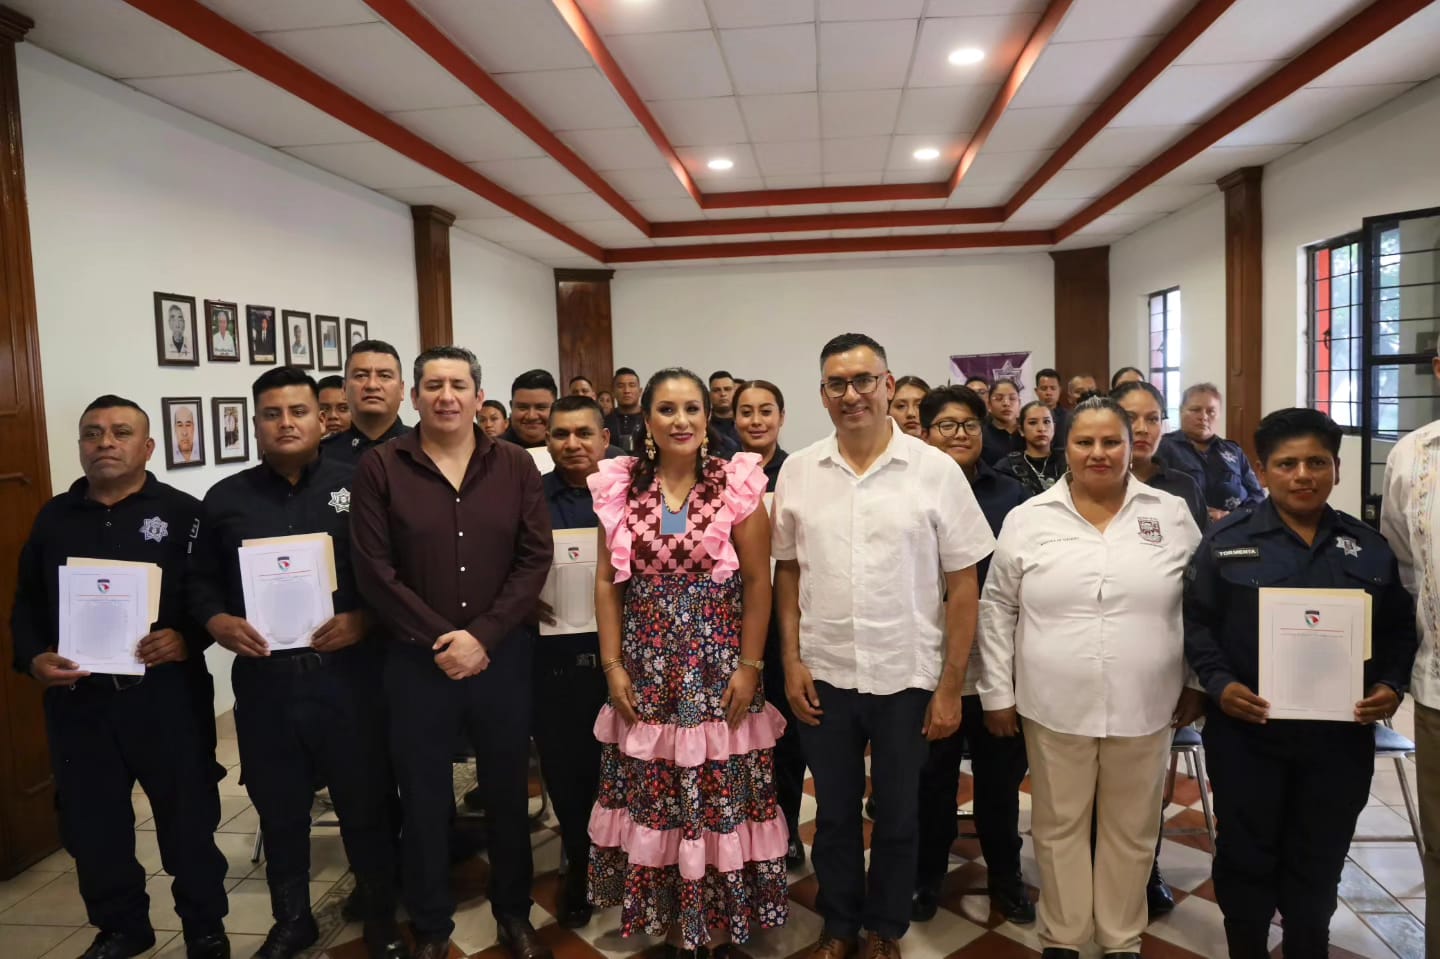 Por primera vez, SESESP certifica a policías municipales de San Antonio de la Cal